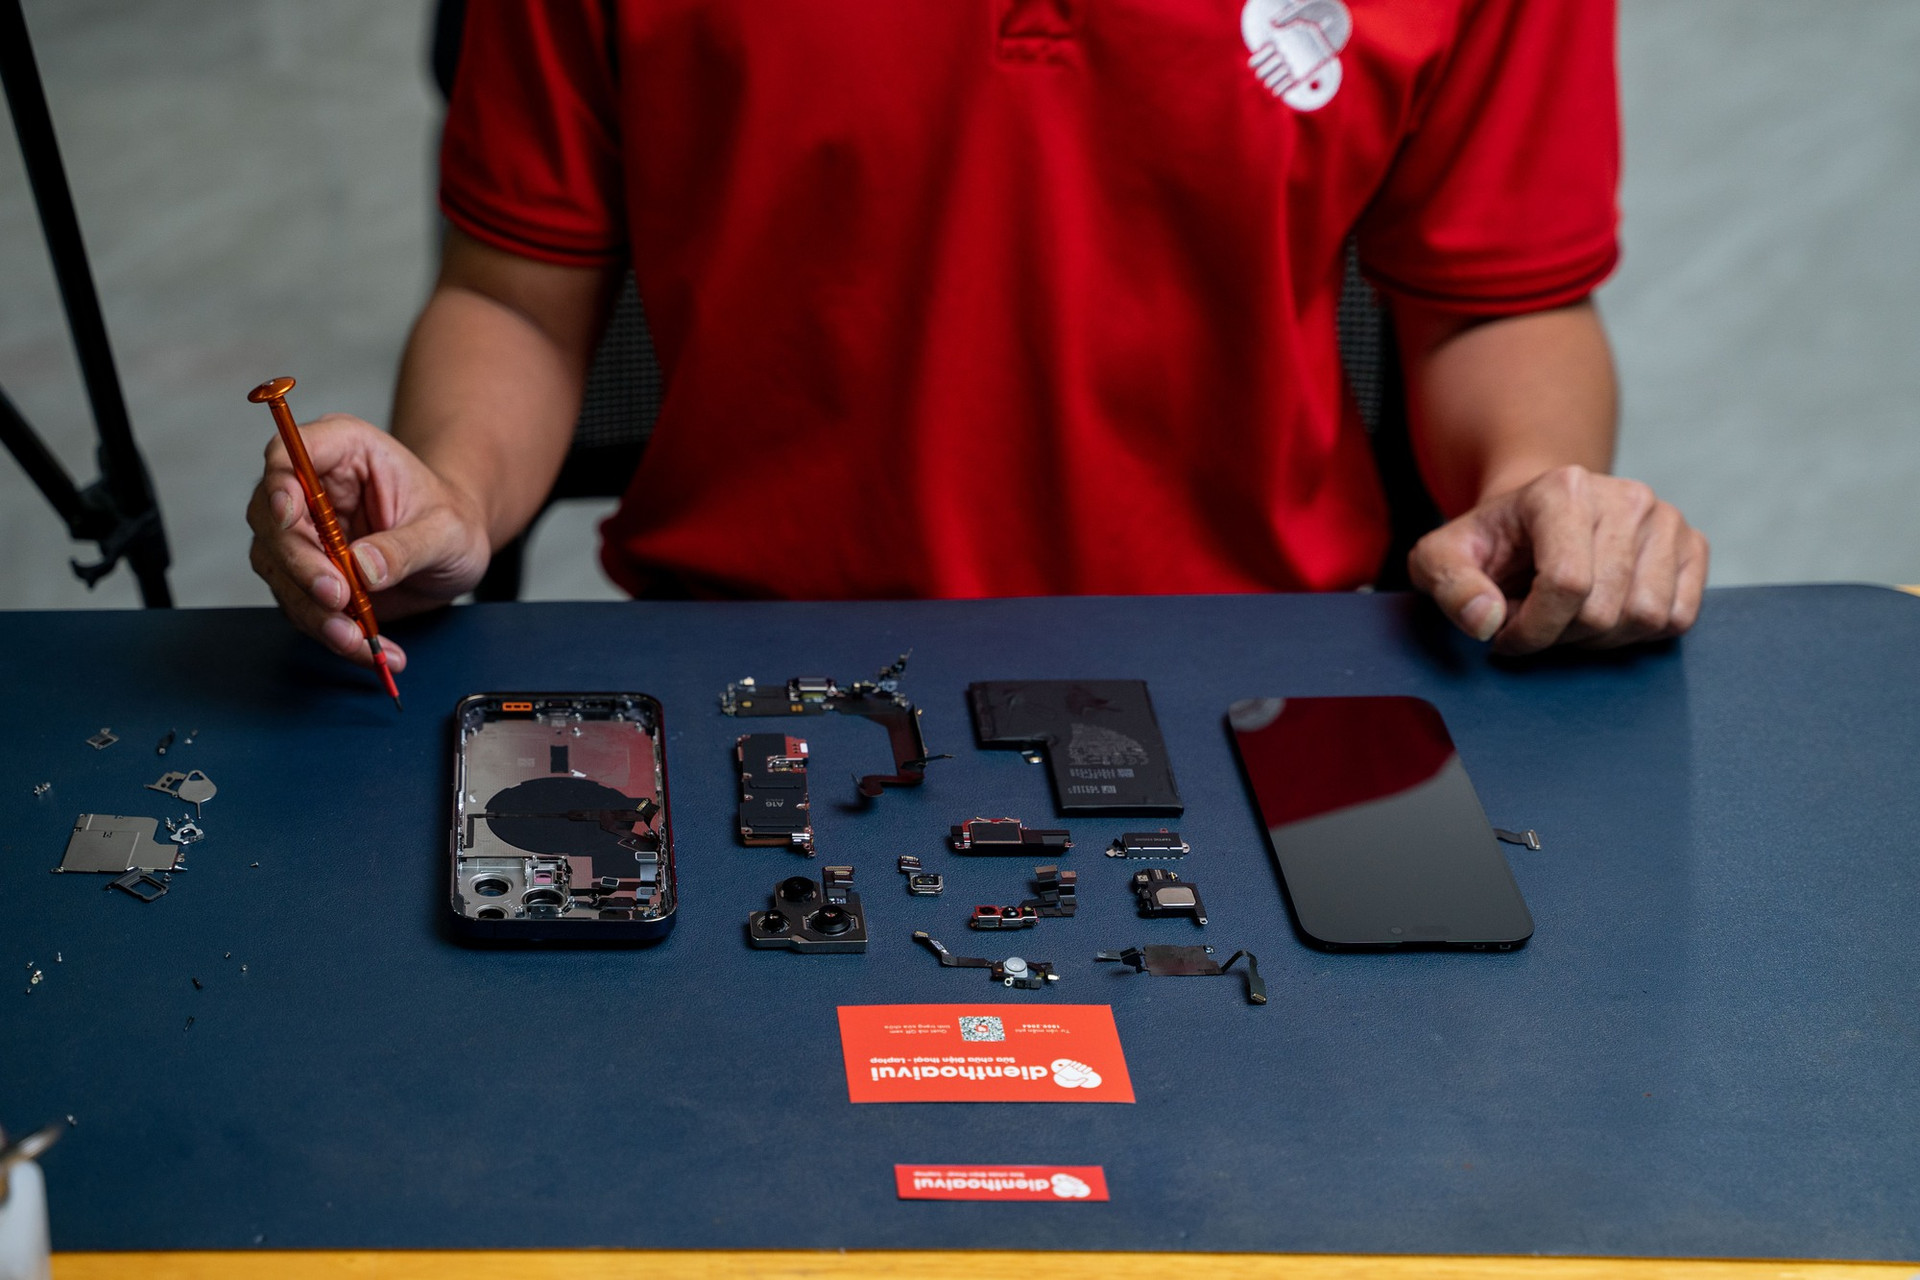 Điện Thoại Vui mở linh kiện bên trong iPhone 14 Pro Max đầu tiên tại Việt Nam - Ảnh 8.